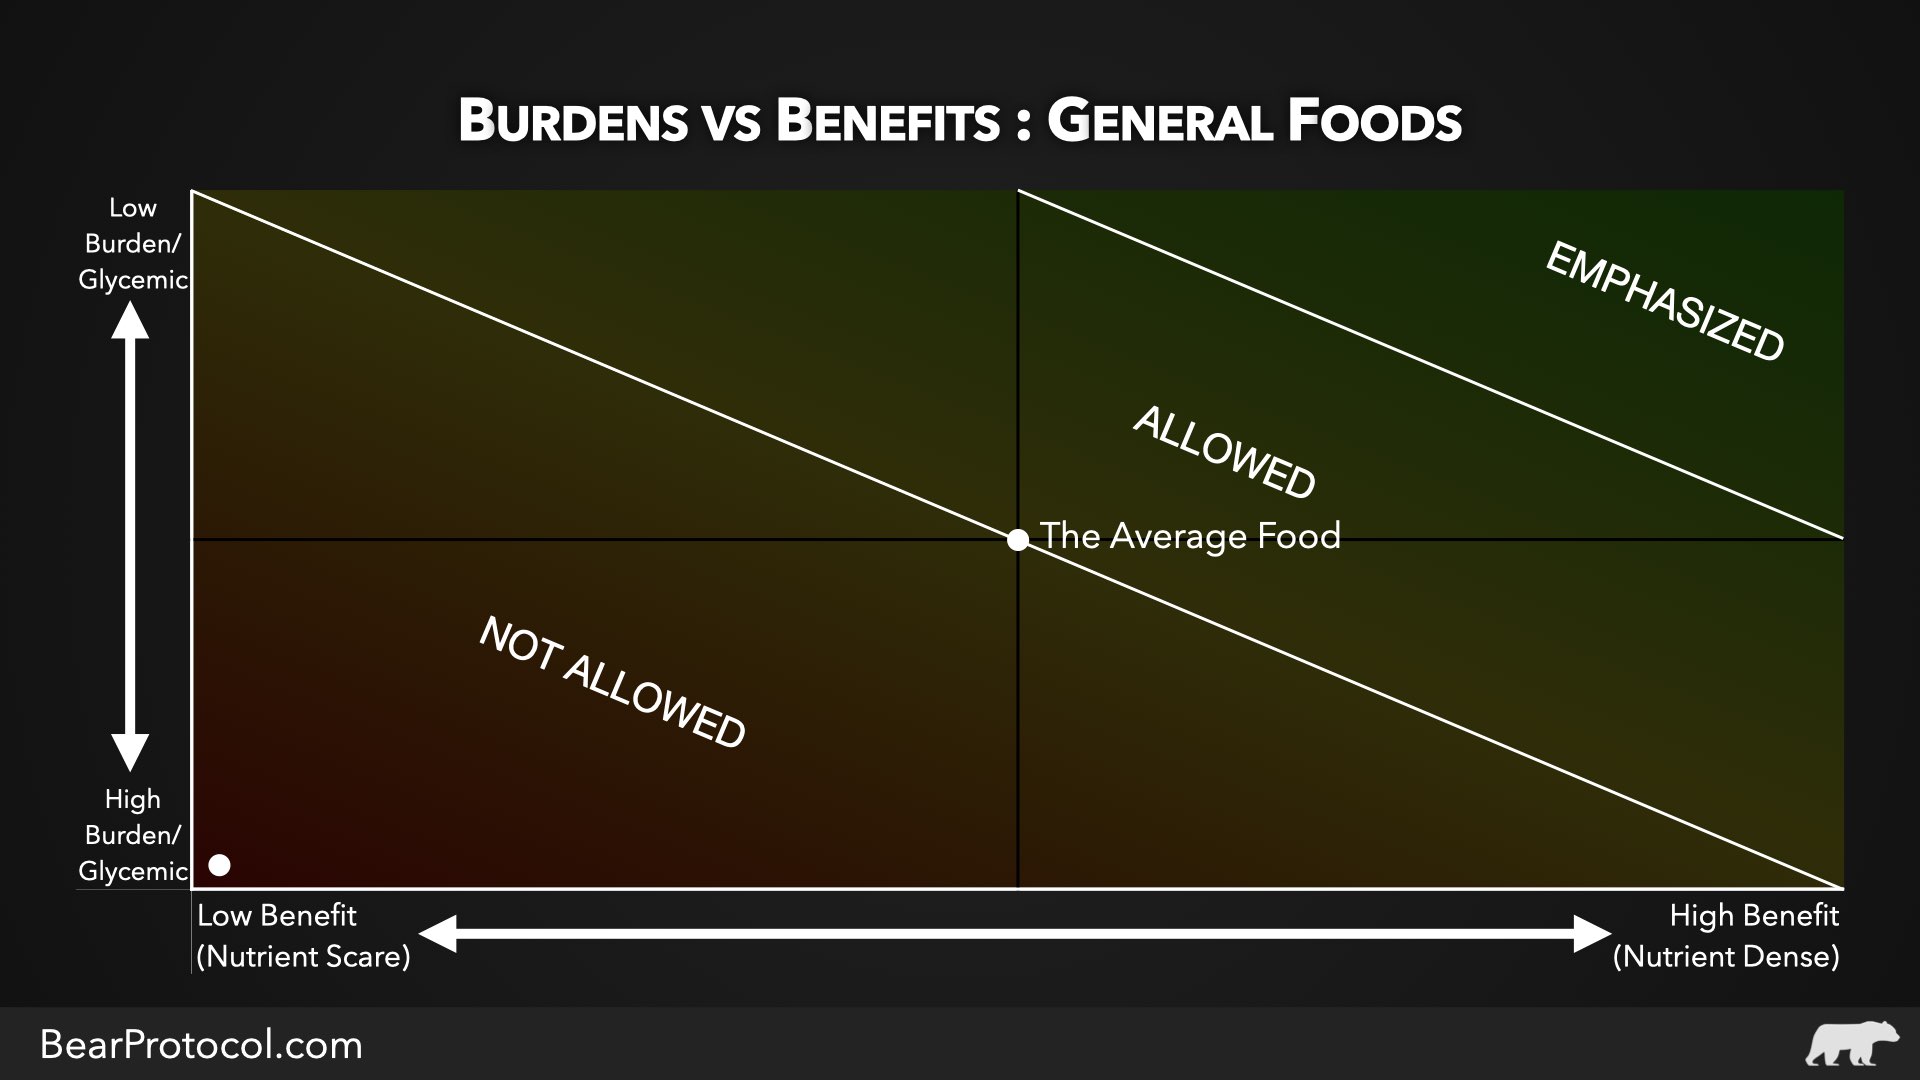 The Burden To Benefit Ratio of Food